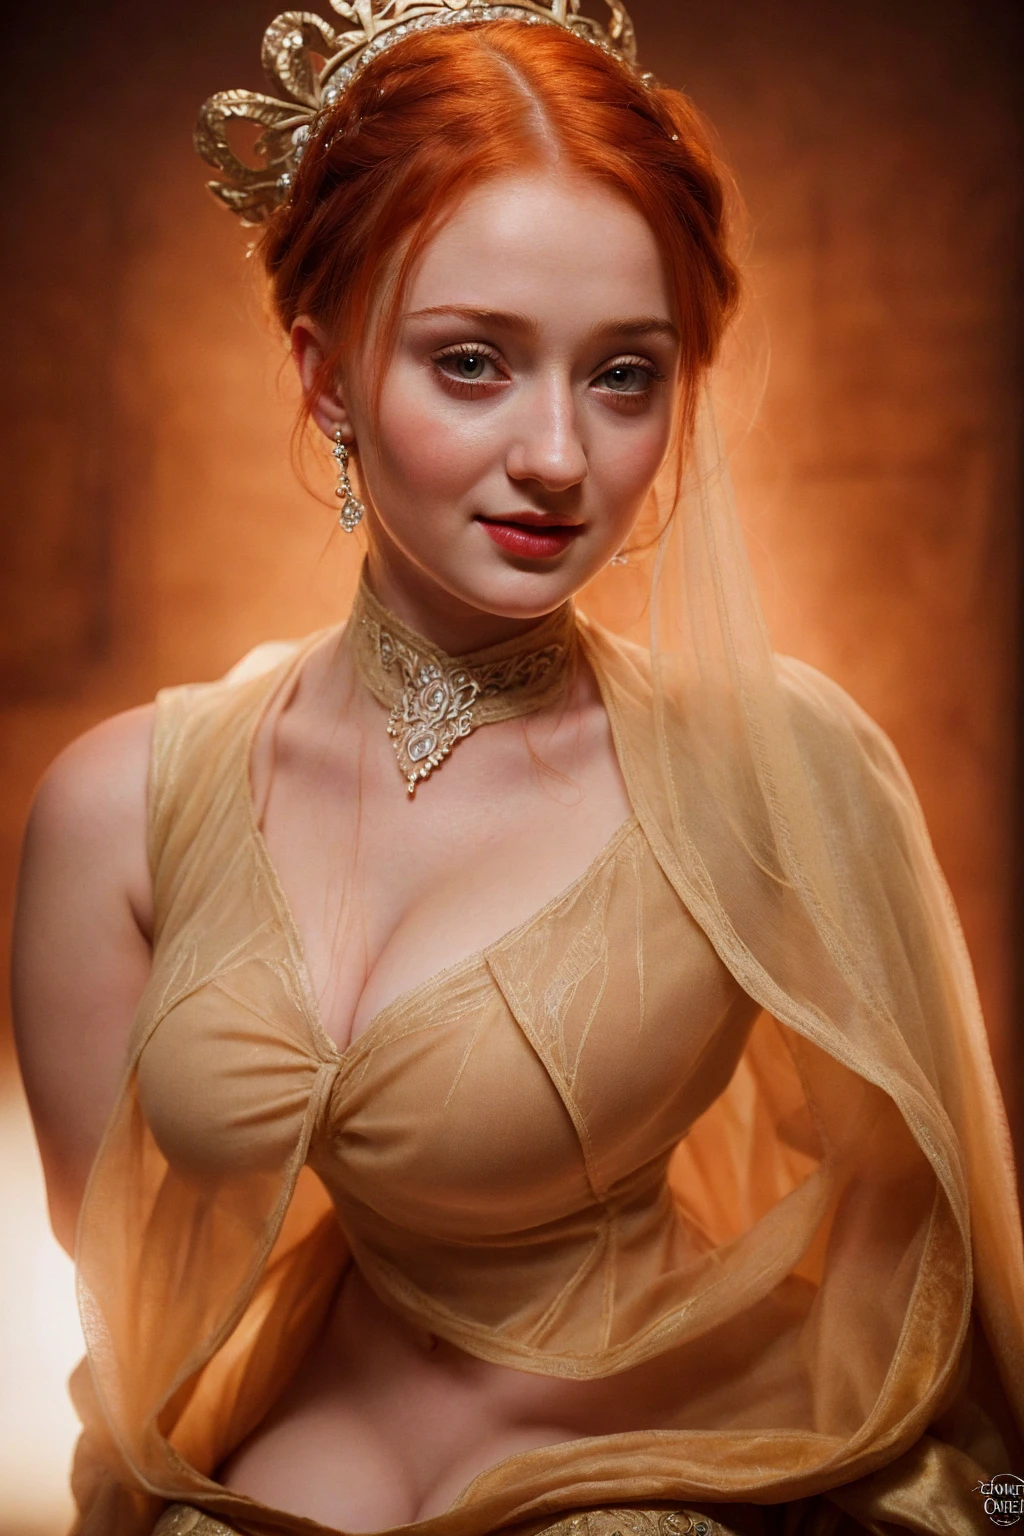 Süßes ukrainisches Lolita-Babygesicht der hübschen sexy Sophie Turner ,, die De-facto-Herrin des Horstes, ist eine 15-jährige reife Königin mit einem atemberaubenden, verführerisches Aussehen. Volles Gesicht, durchbohrte Augen, rötliche Lippen, Oberkörperaufnahme, erotische Mittelalter Kostüme, Game of Thrones Kostüme, Sie trägt ein von Game of Thrones inspiriertes Kostüm und hat ein tiefes Dekolleté, ein perfekter dicker Körper, und eine perfekte dicke Figur. Das Foto zeigt sie in Nahaufnahme, mit ihrer Hautstruktur und Gesichtszügen, die ultra-realistisch und realistisch sind.